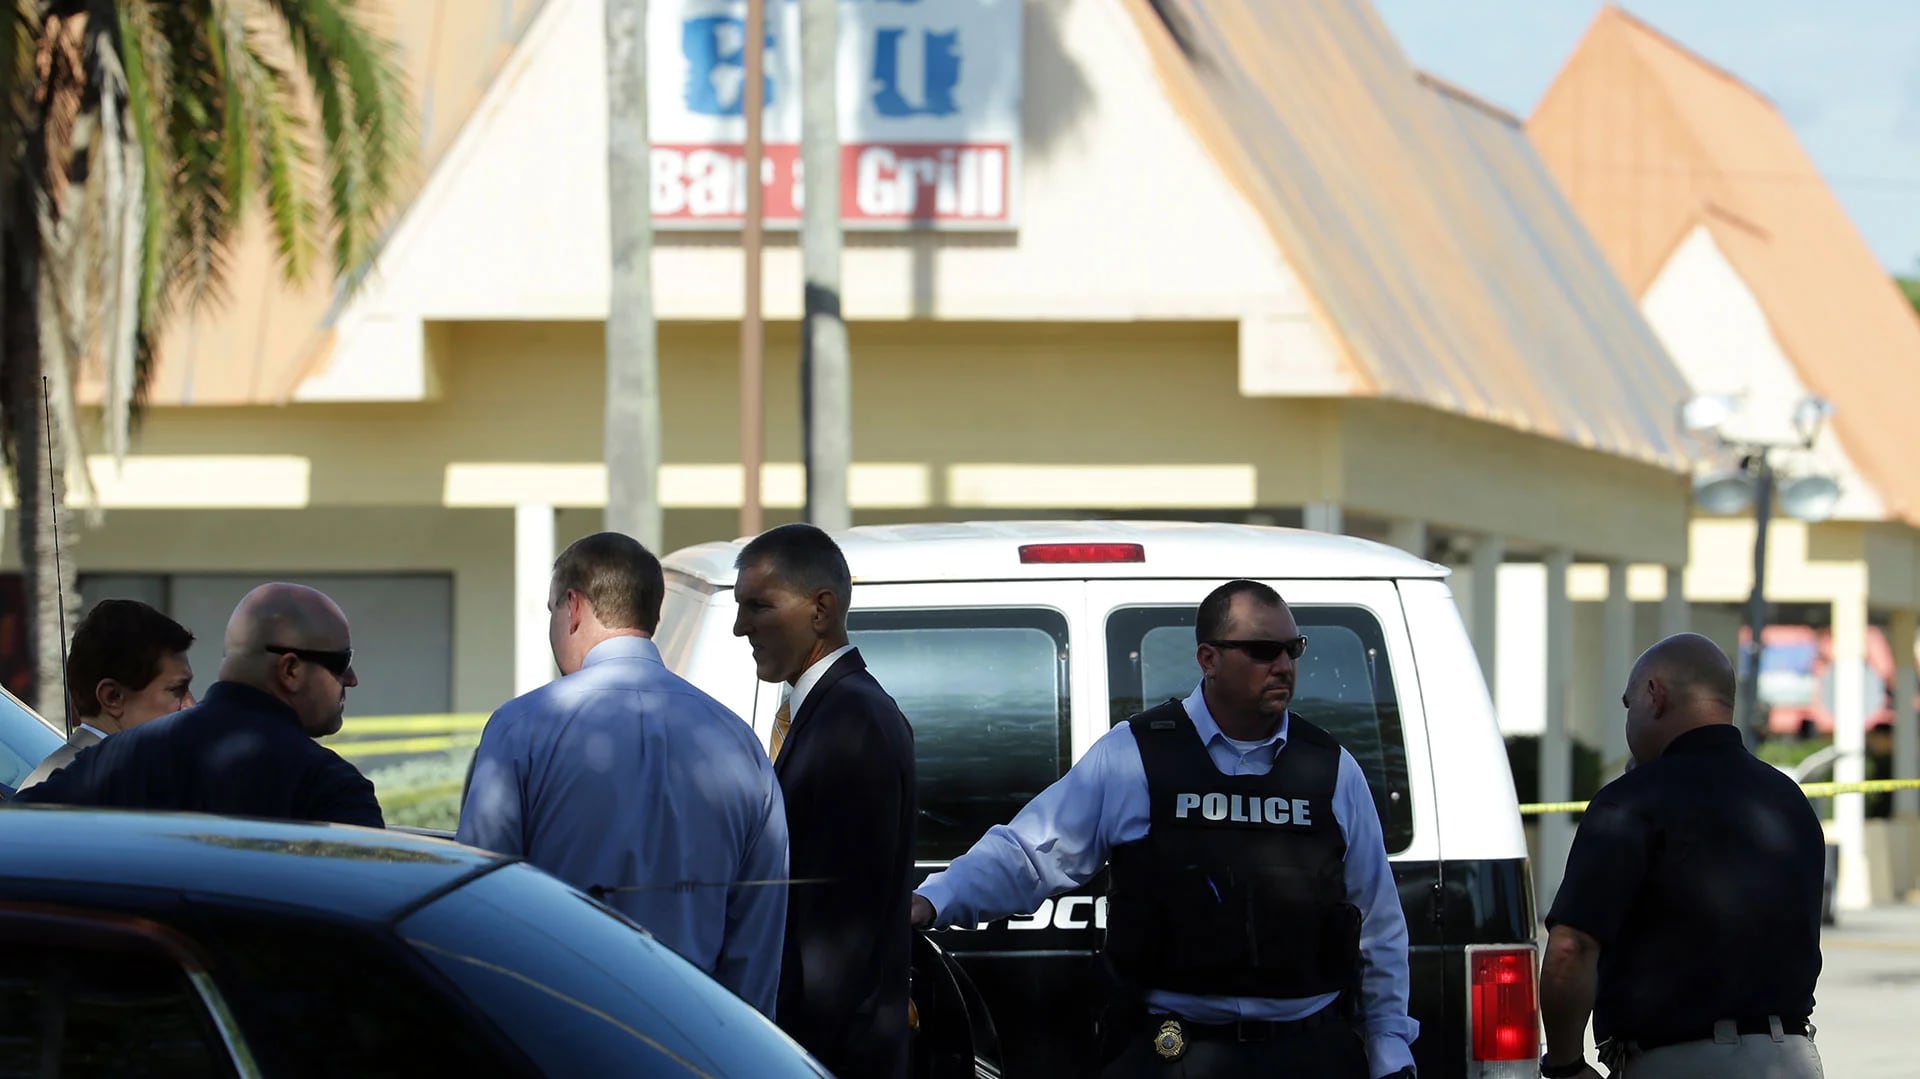 La Policía custodia el Club Blu de Fort Myers, oeste de Florida, donde mataron a dos adolescentes.